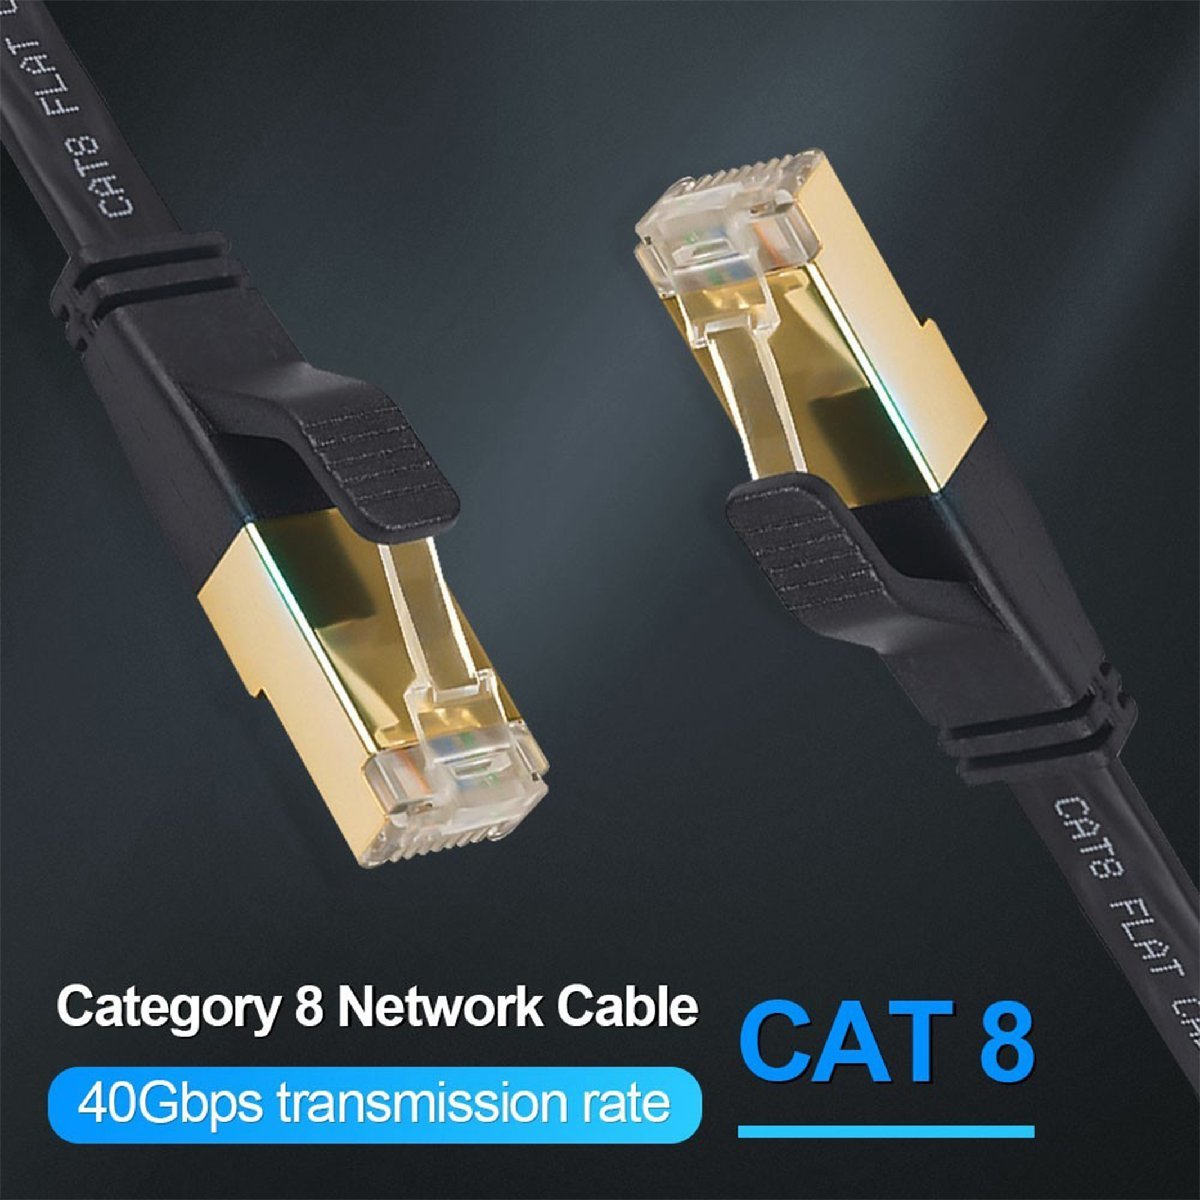 [5m] супер высокая скорость CAT8 Flat LAN кабель 26AWG 40Gbps 2000MHz категория -8 интернет ушко поломка предотвращение PS5 Xbox и т.д. соответствует 